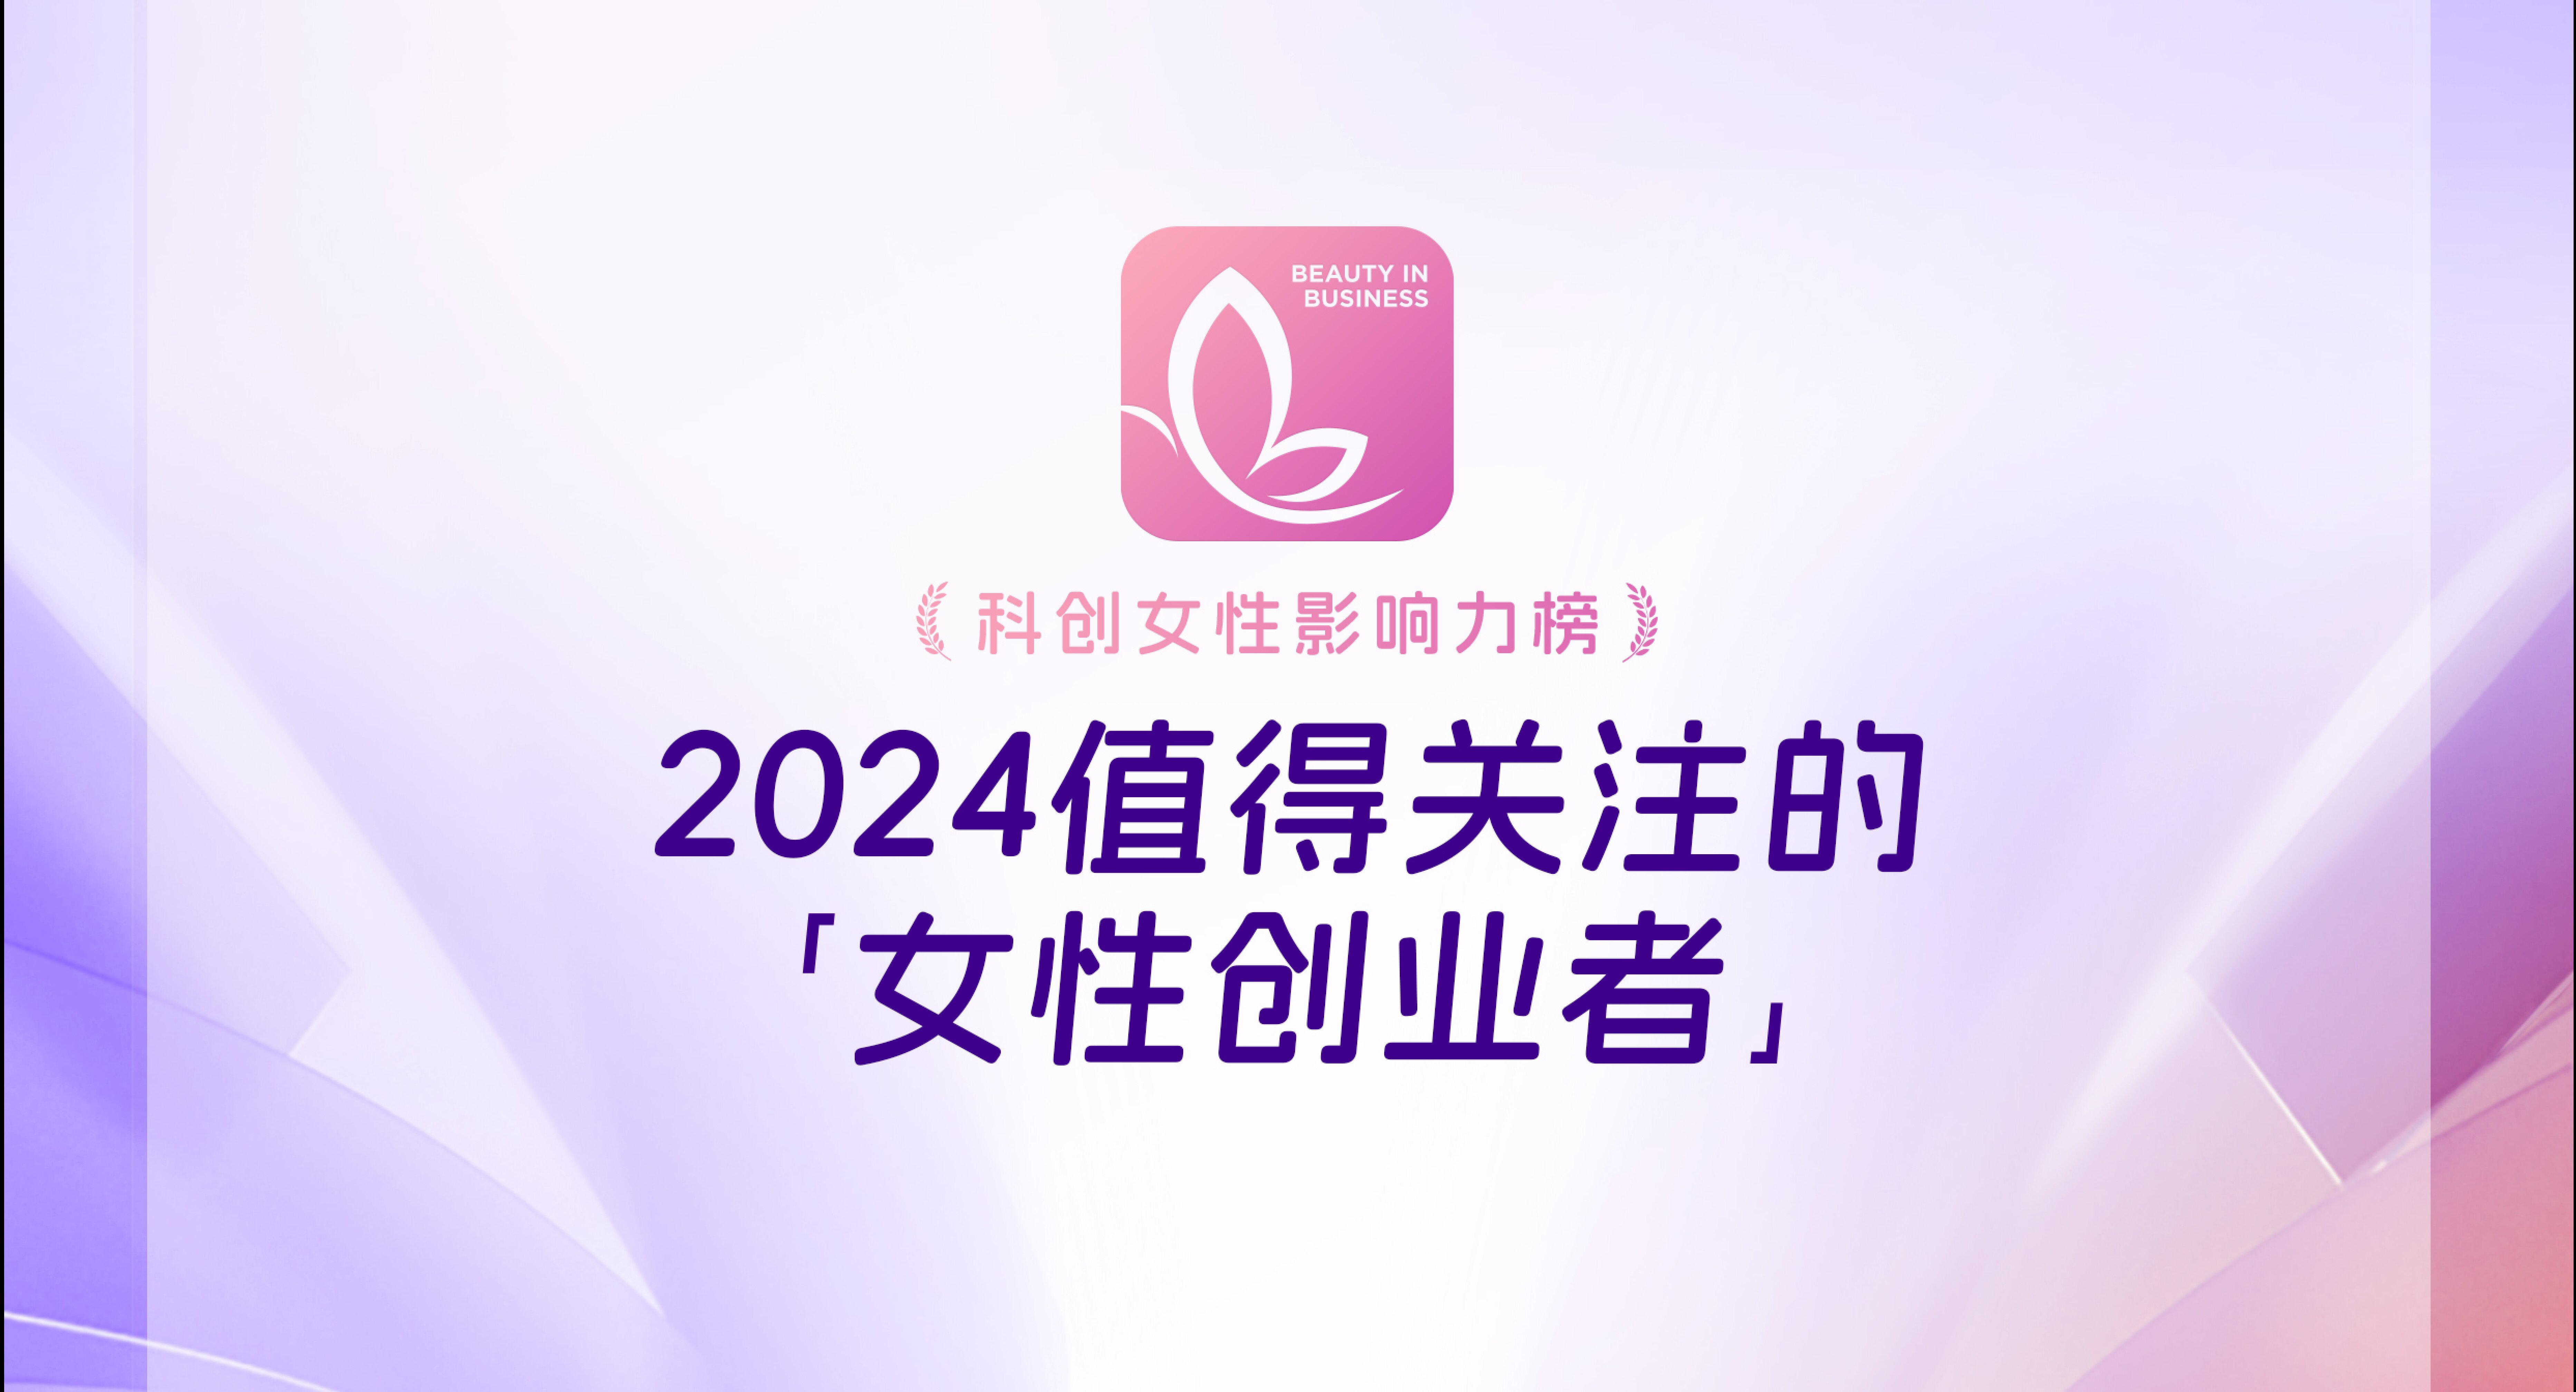 聚光时刻 | 竹云创始人董宁入选创业邦「2024值得关注的女性创业者」榜单！